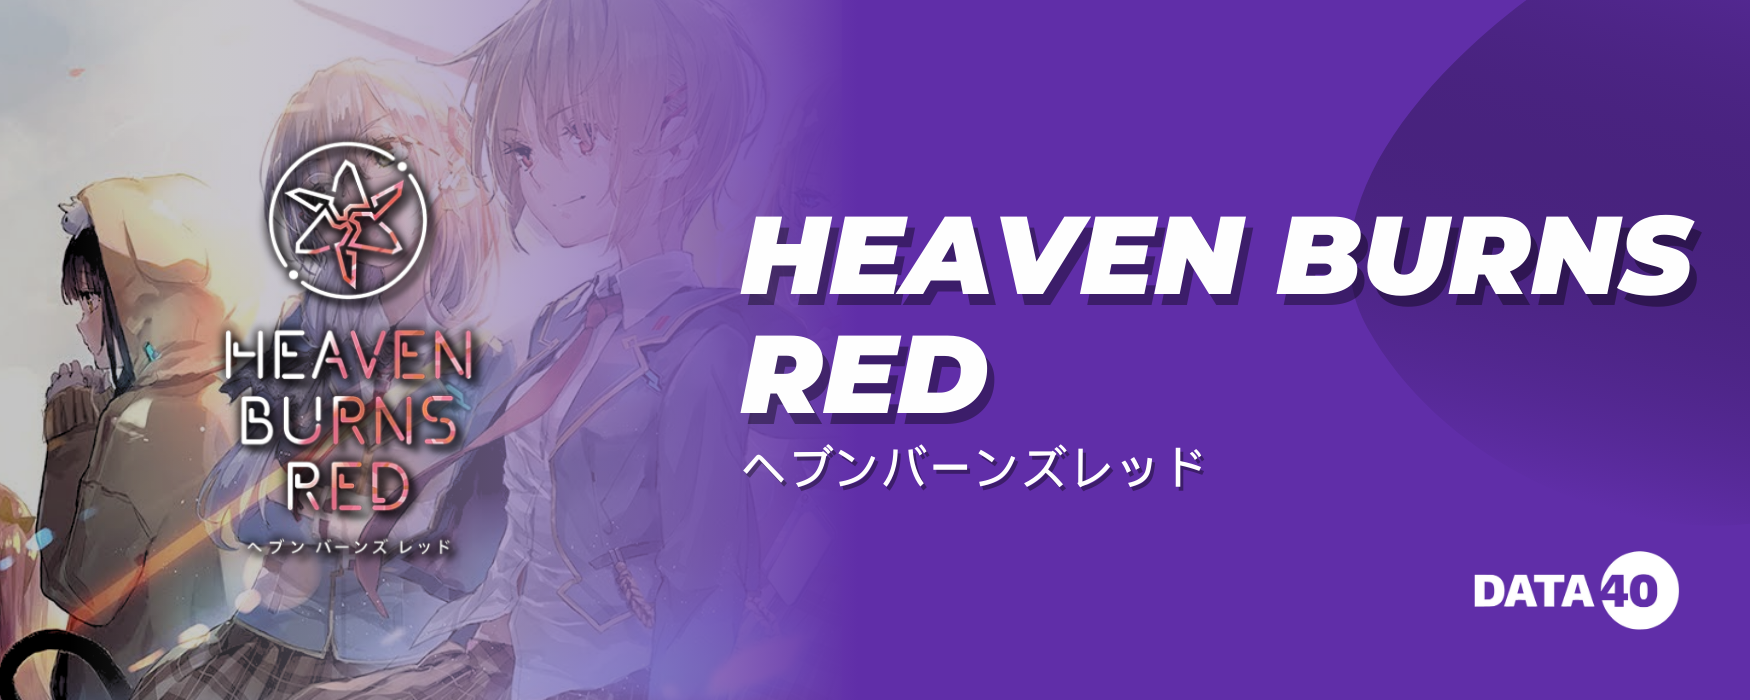 Heaven Burns Red